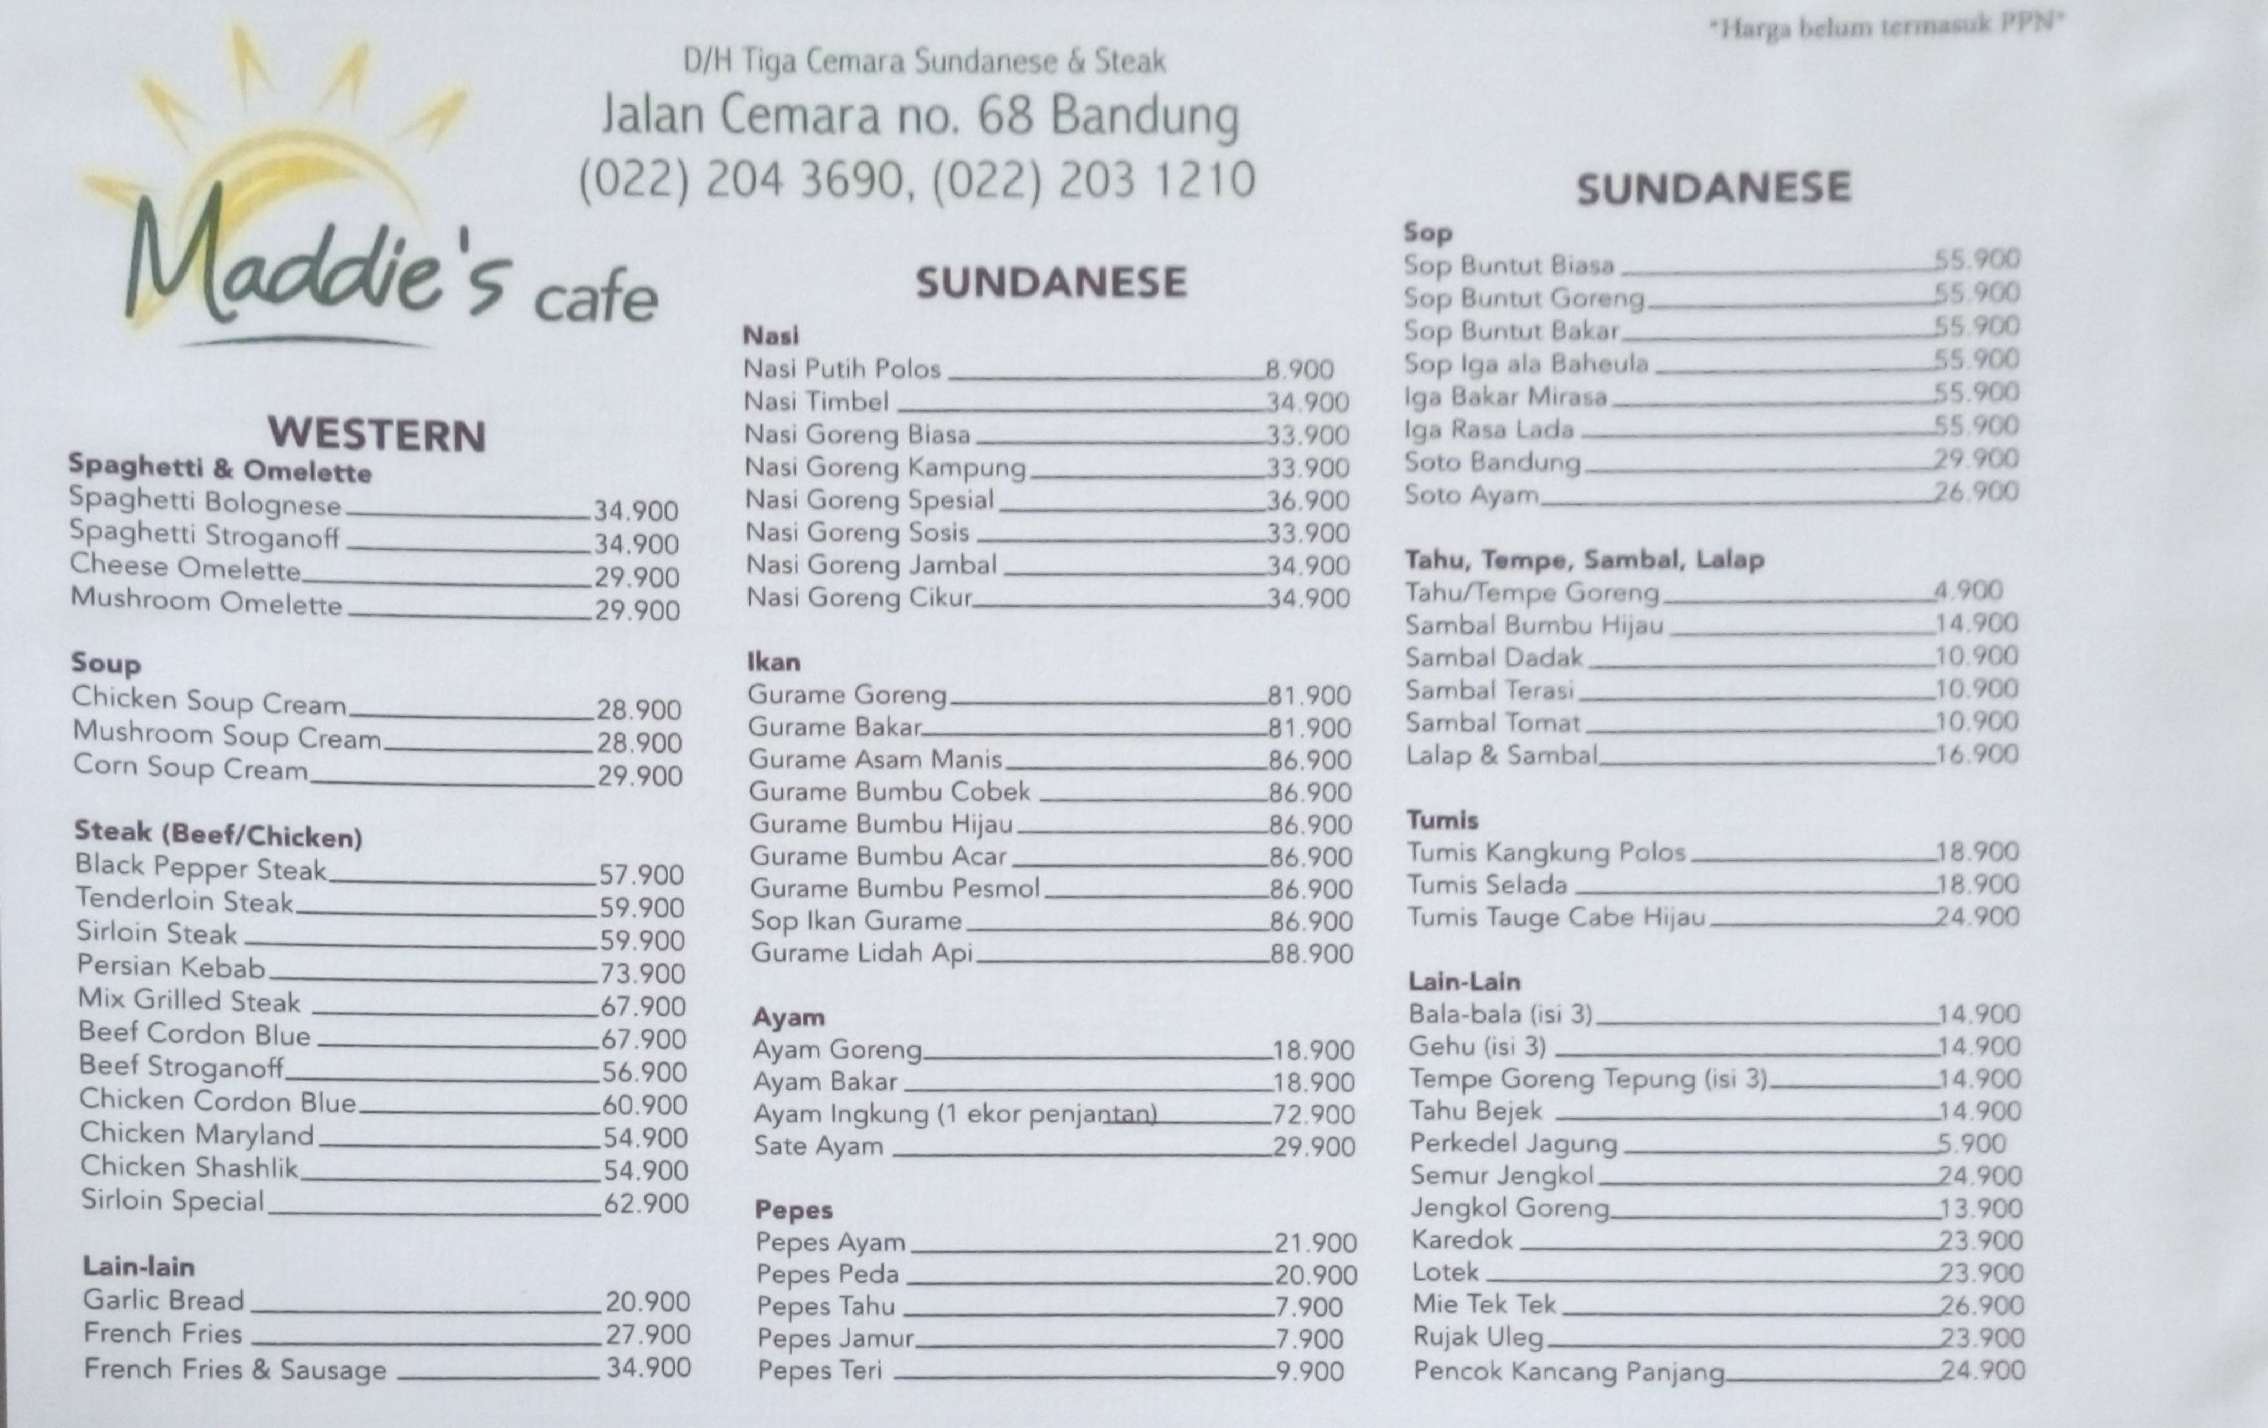 Harga menu Maddie's Cafe terbaru 2022-2023 di Bandung,Bandung